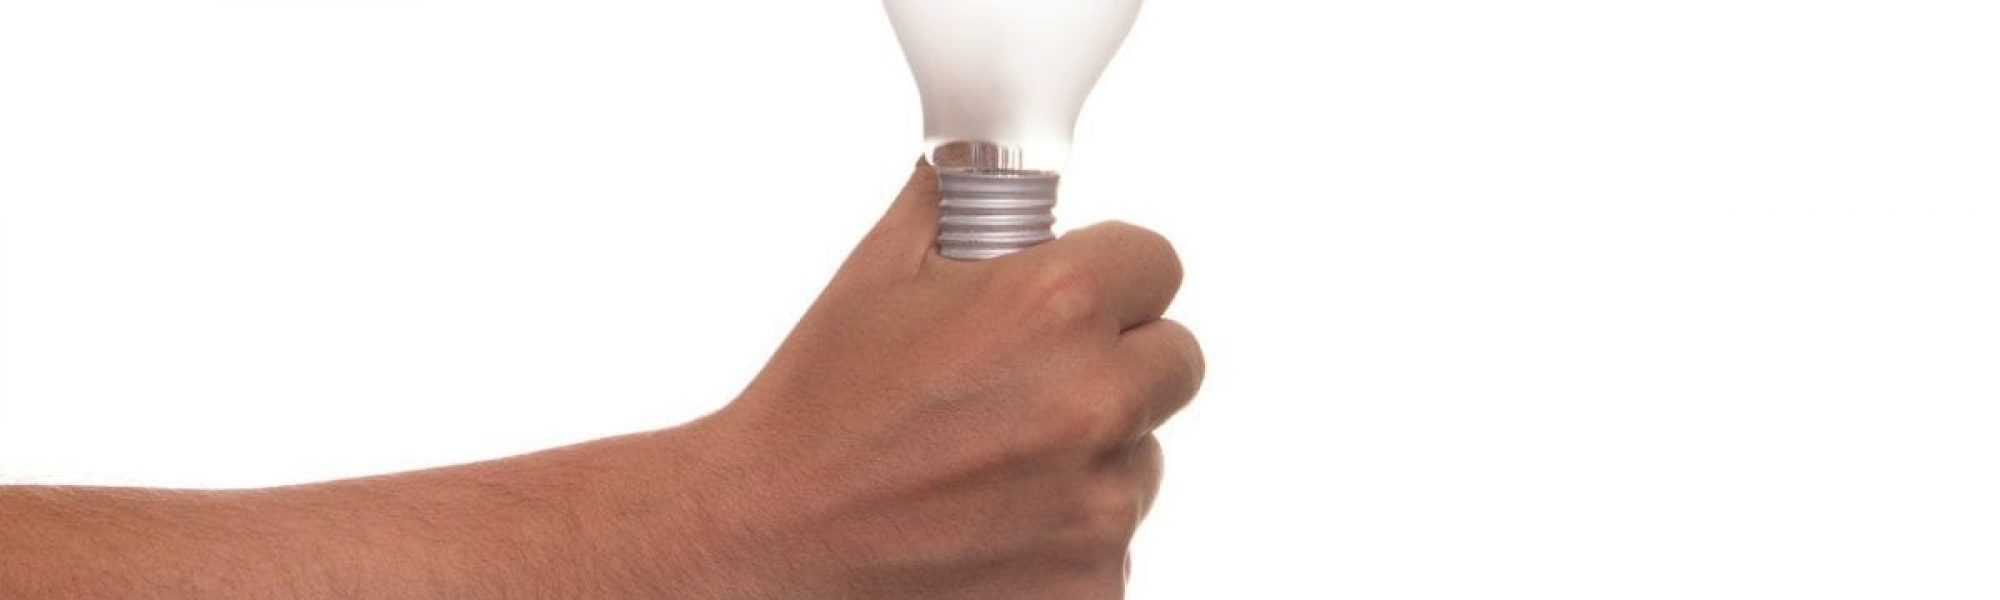 Man holding lightbulb